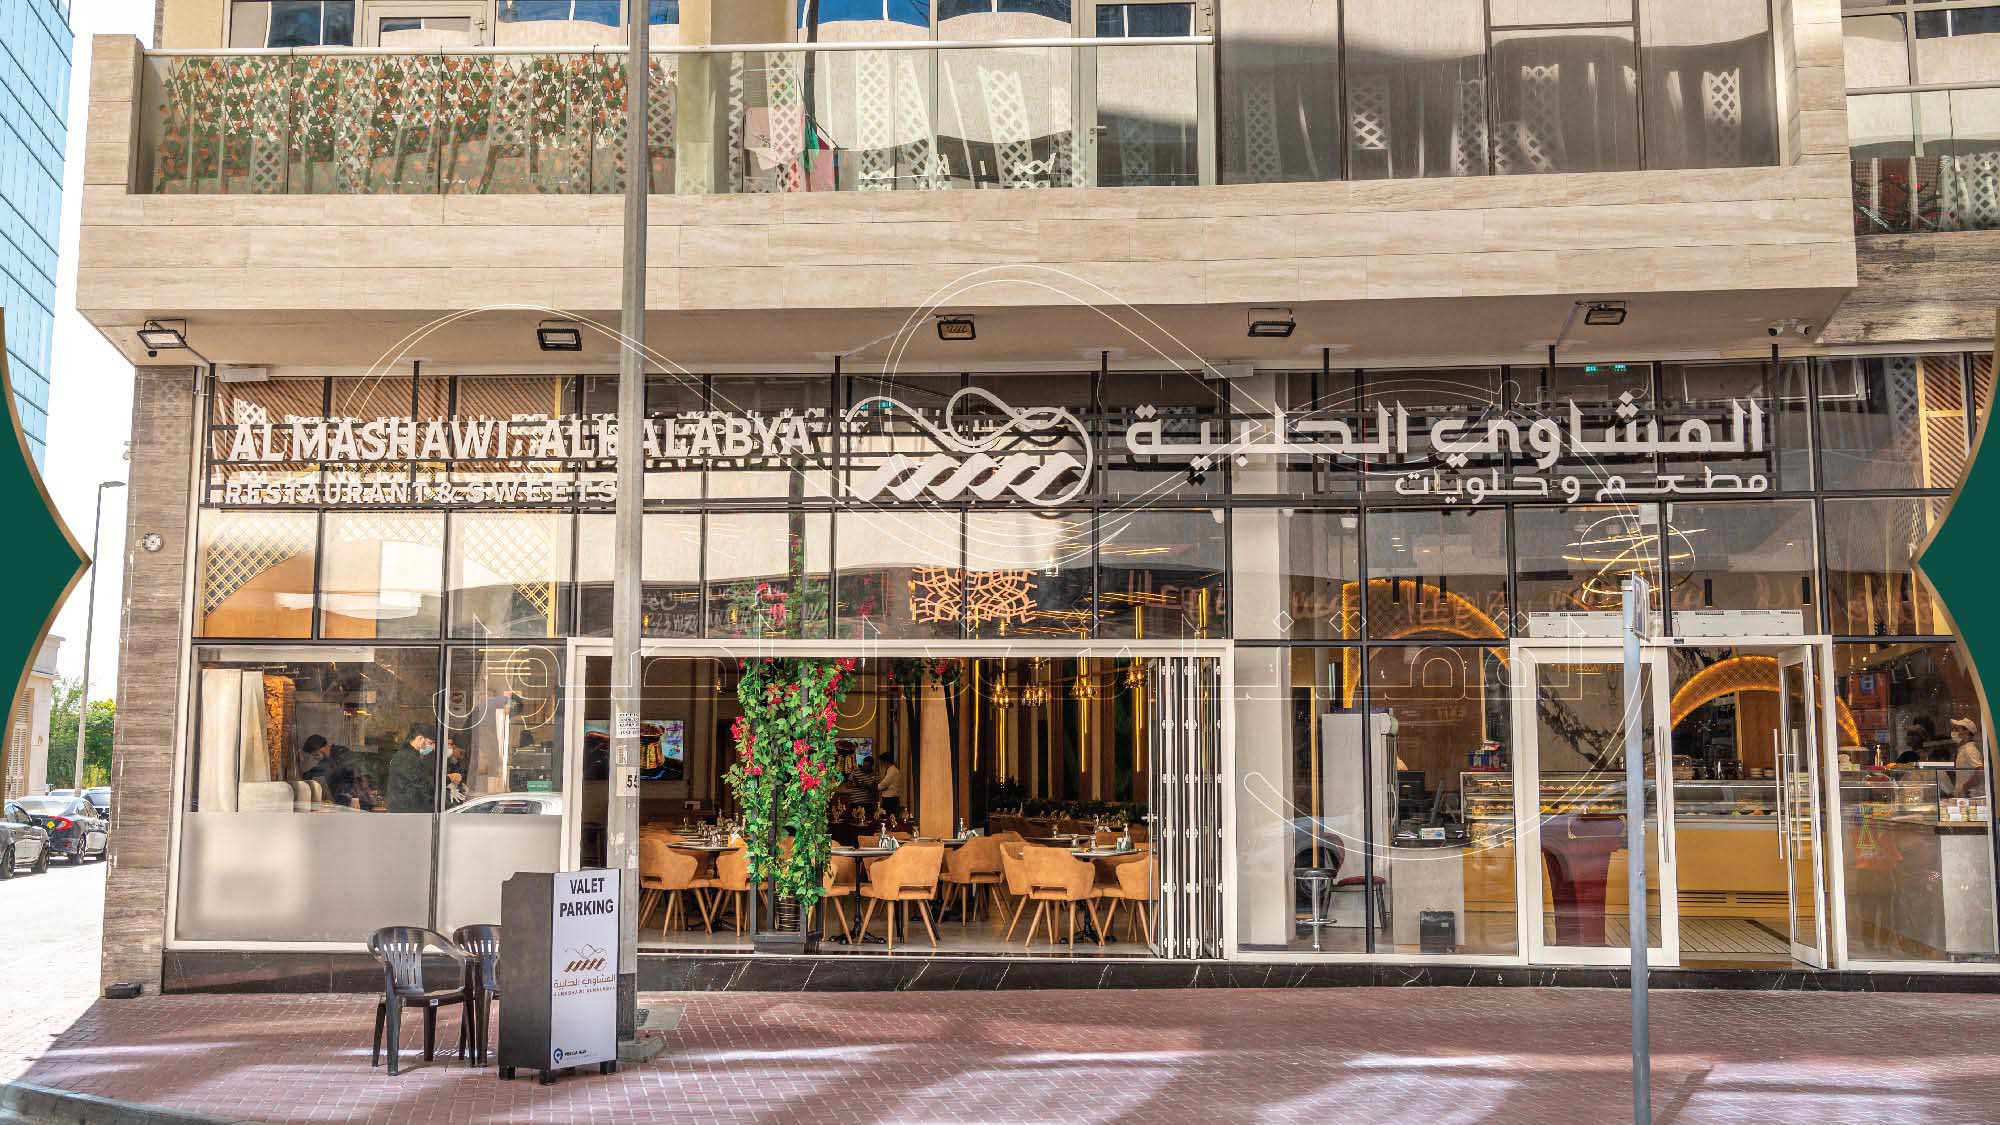 Al Mashawi Al Halabya: Celebrating Culinary Excellence in Al Garhoud and Al Barsha ​